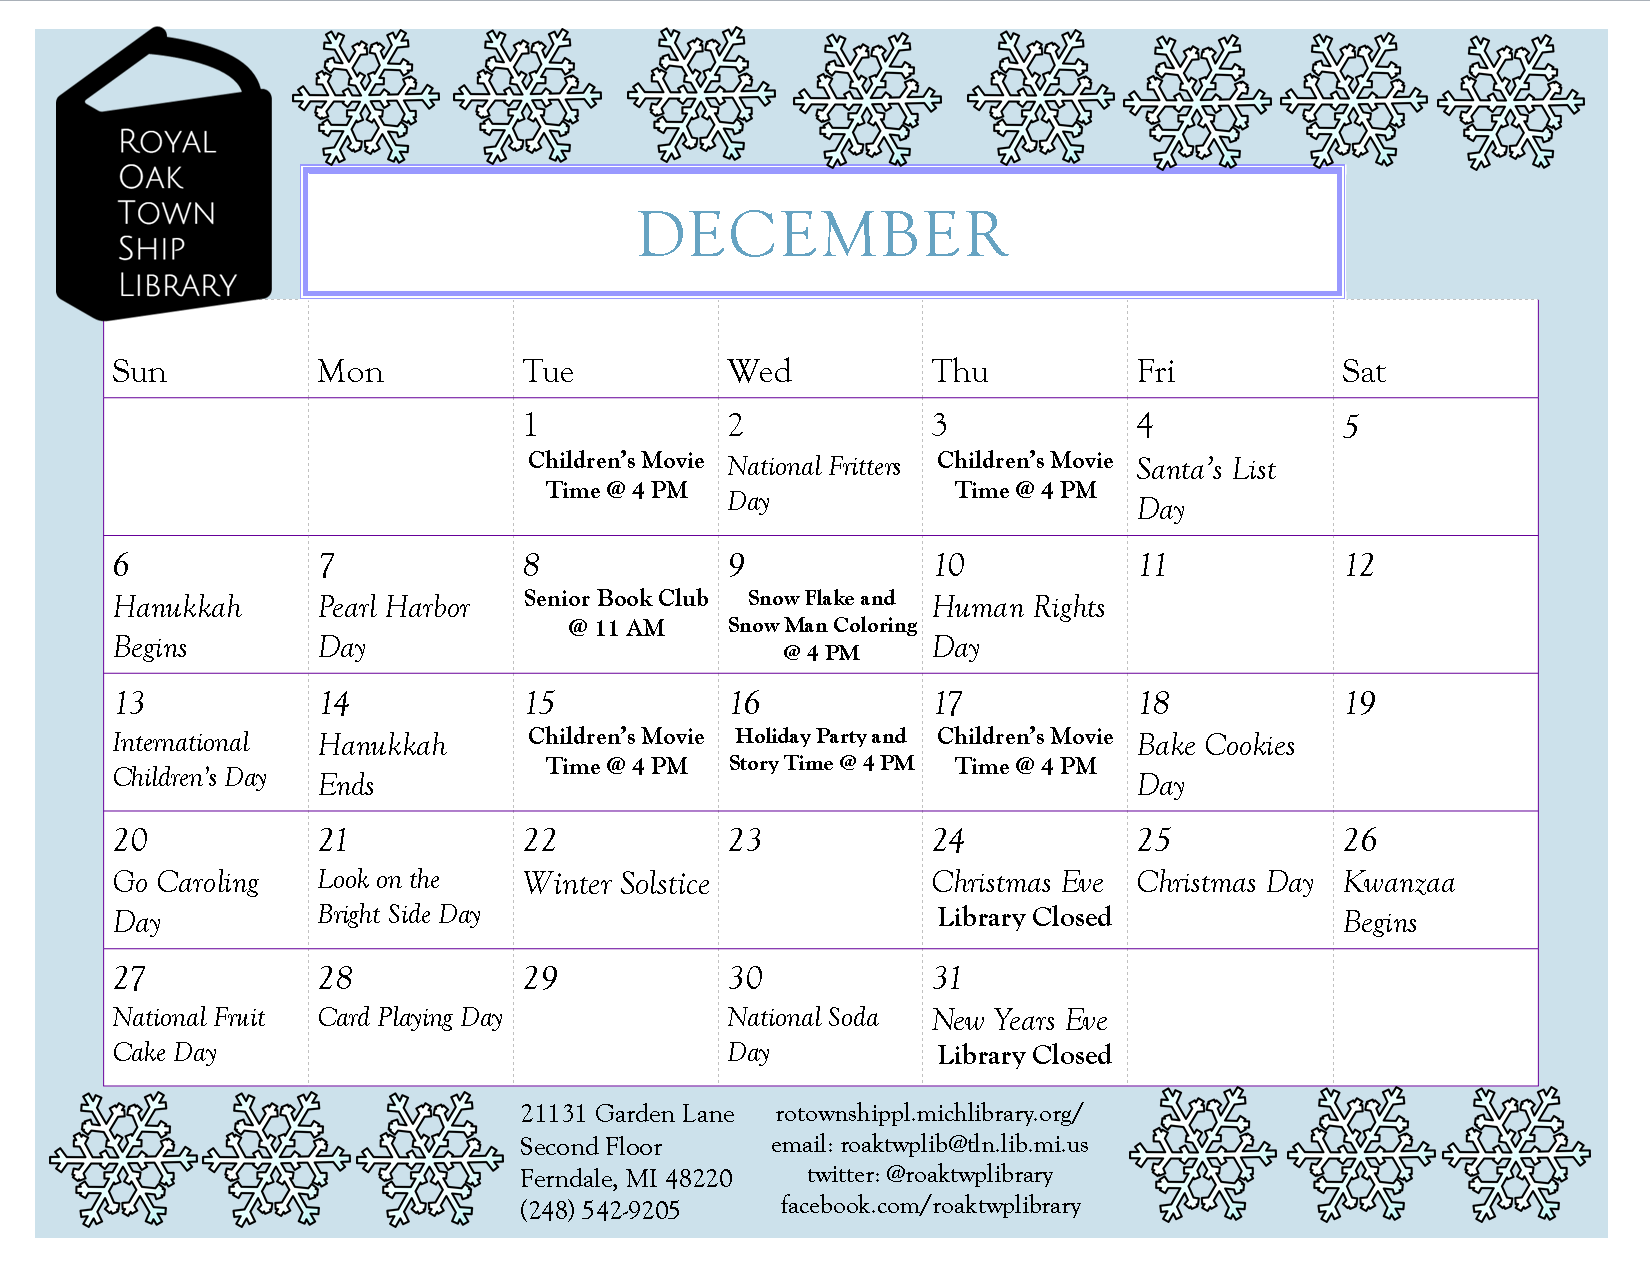 December 2015 Calendar.pub.png